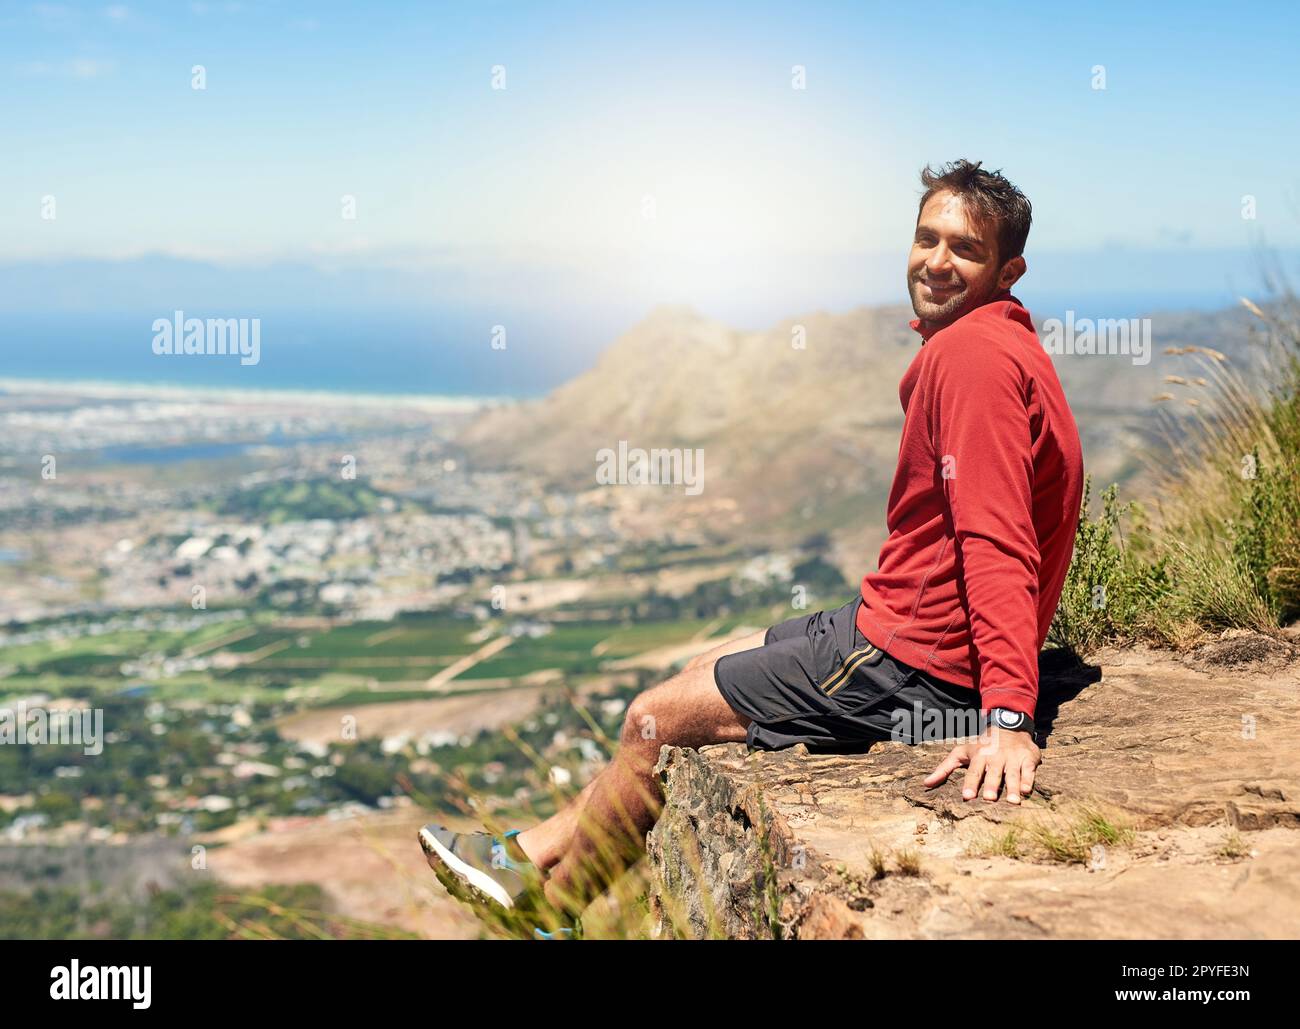 Der Aufstieg war hart, aber die Aussicht lohnt sich. Porträt eines sportlichen jungen Mannes, der die Aussicht vom Gipfel eines Berges bewundert. Stockfoto